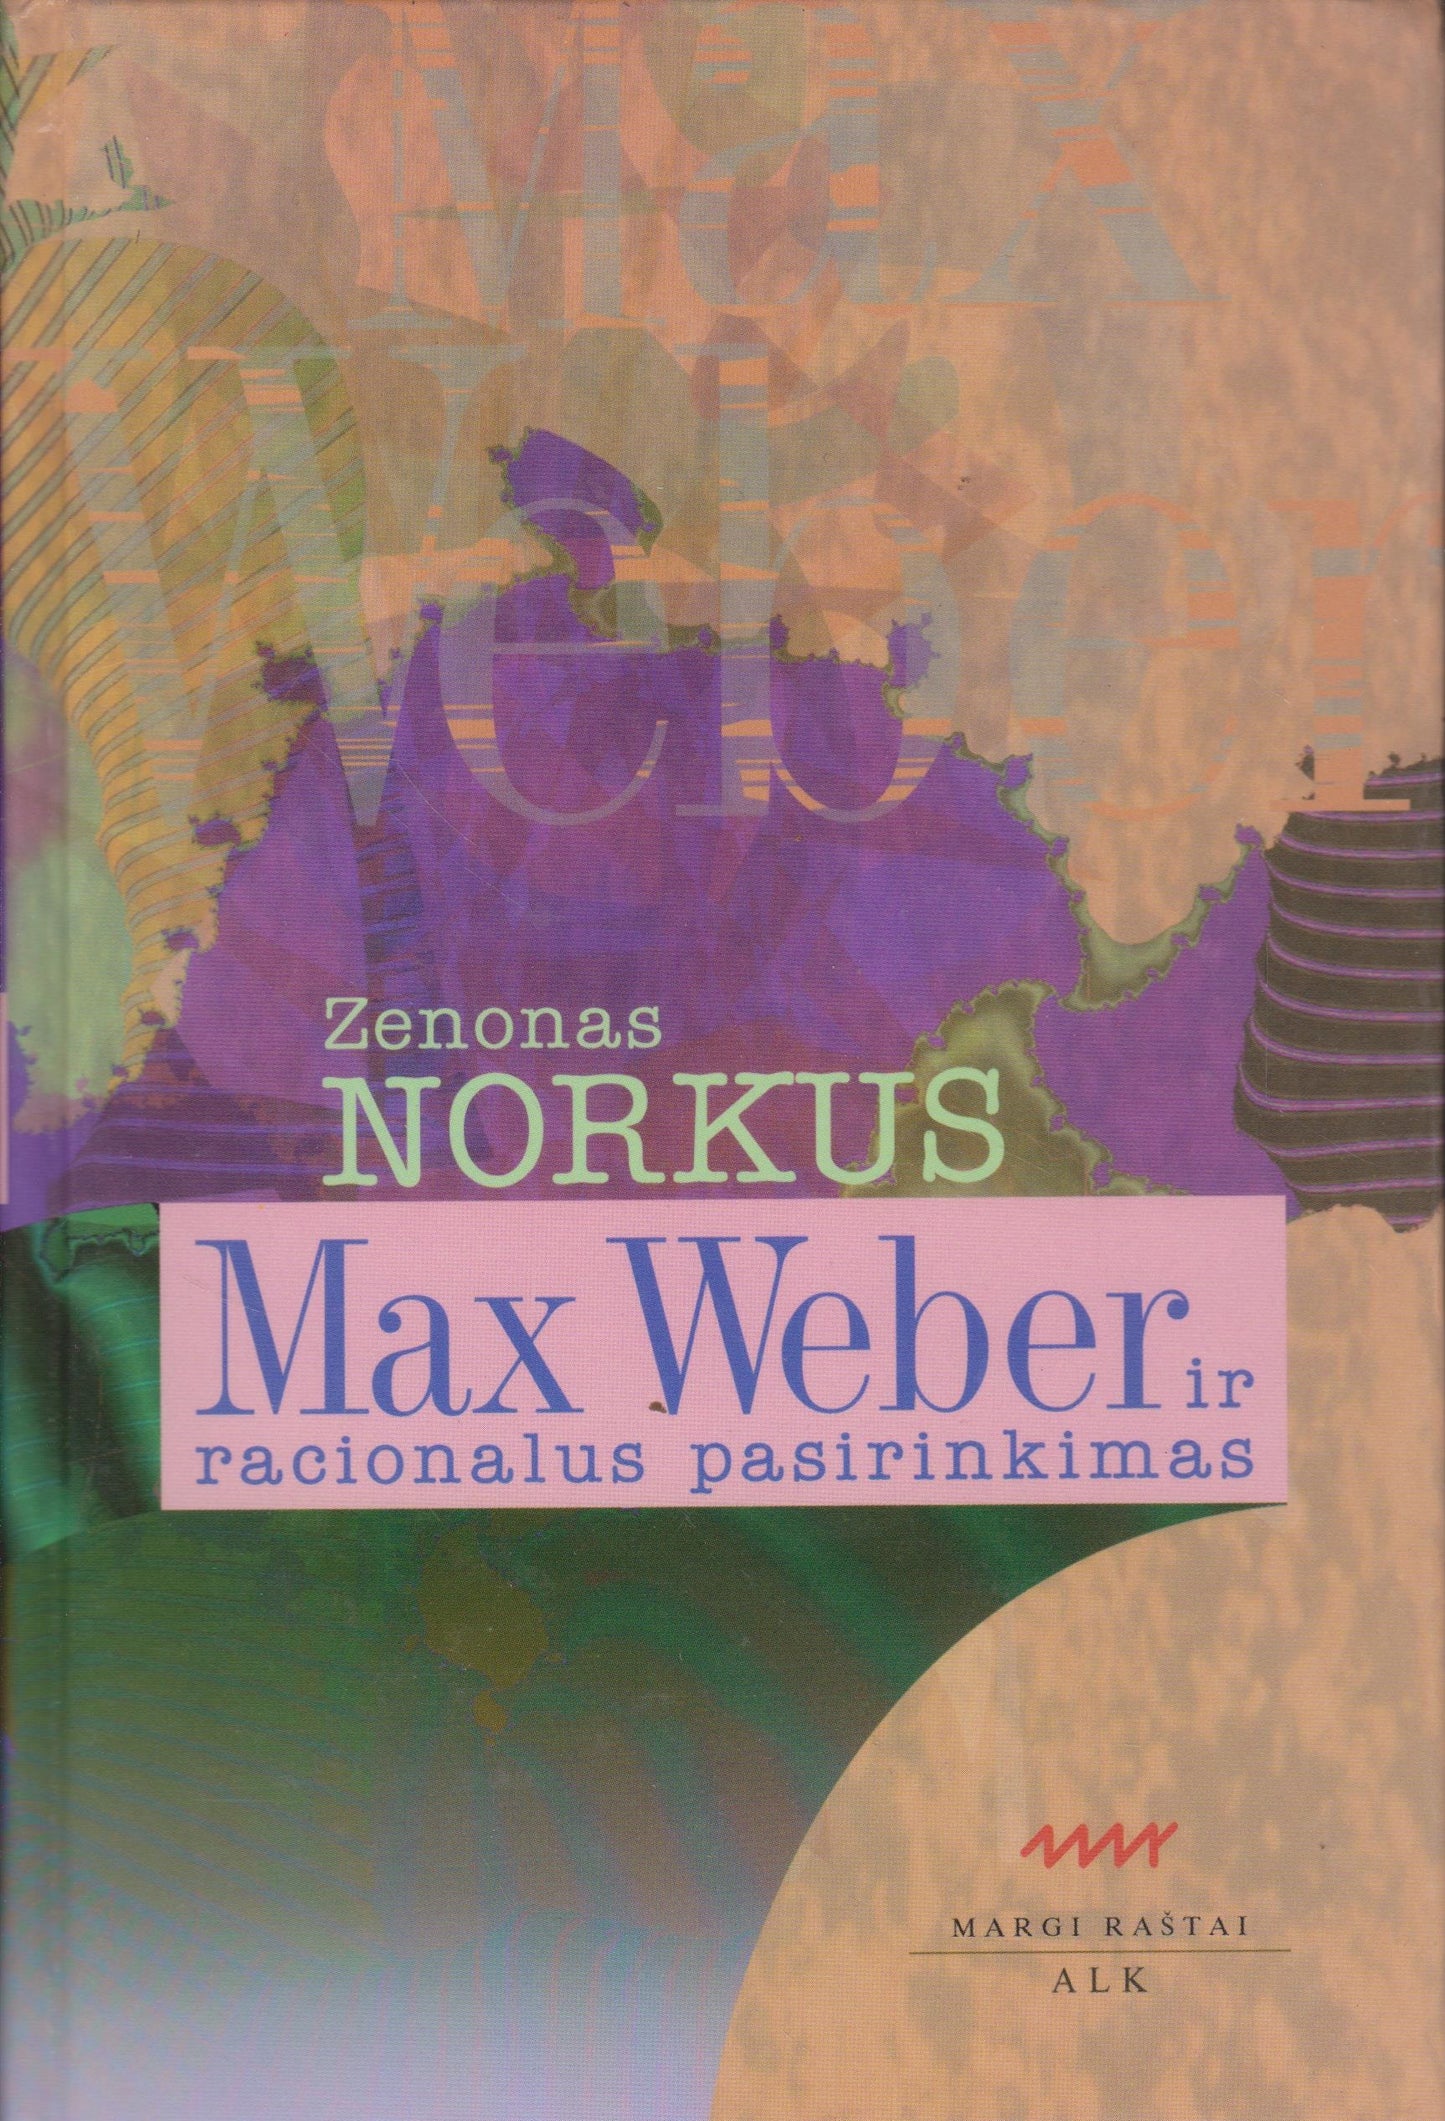 Z. Norkus - Max Weber ir racionalus pasirinkimas